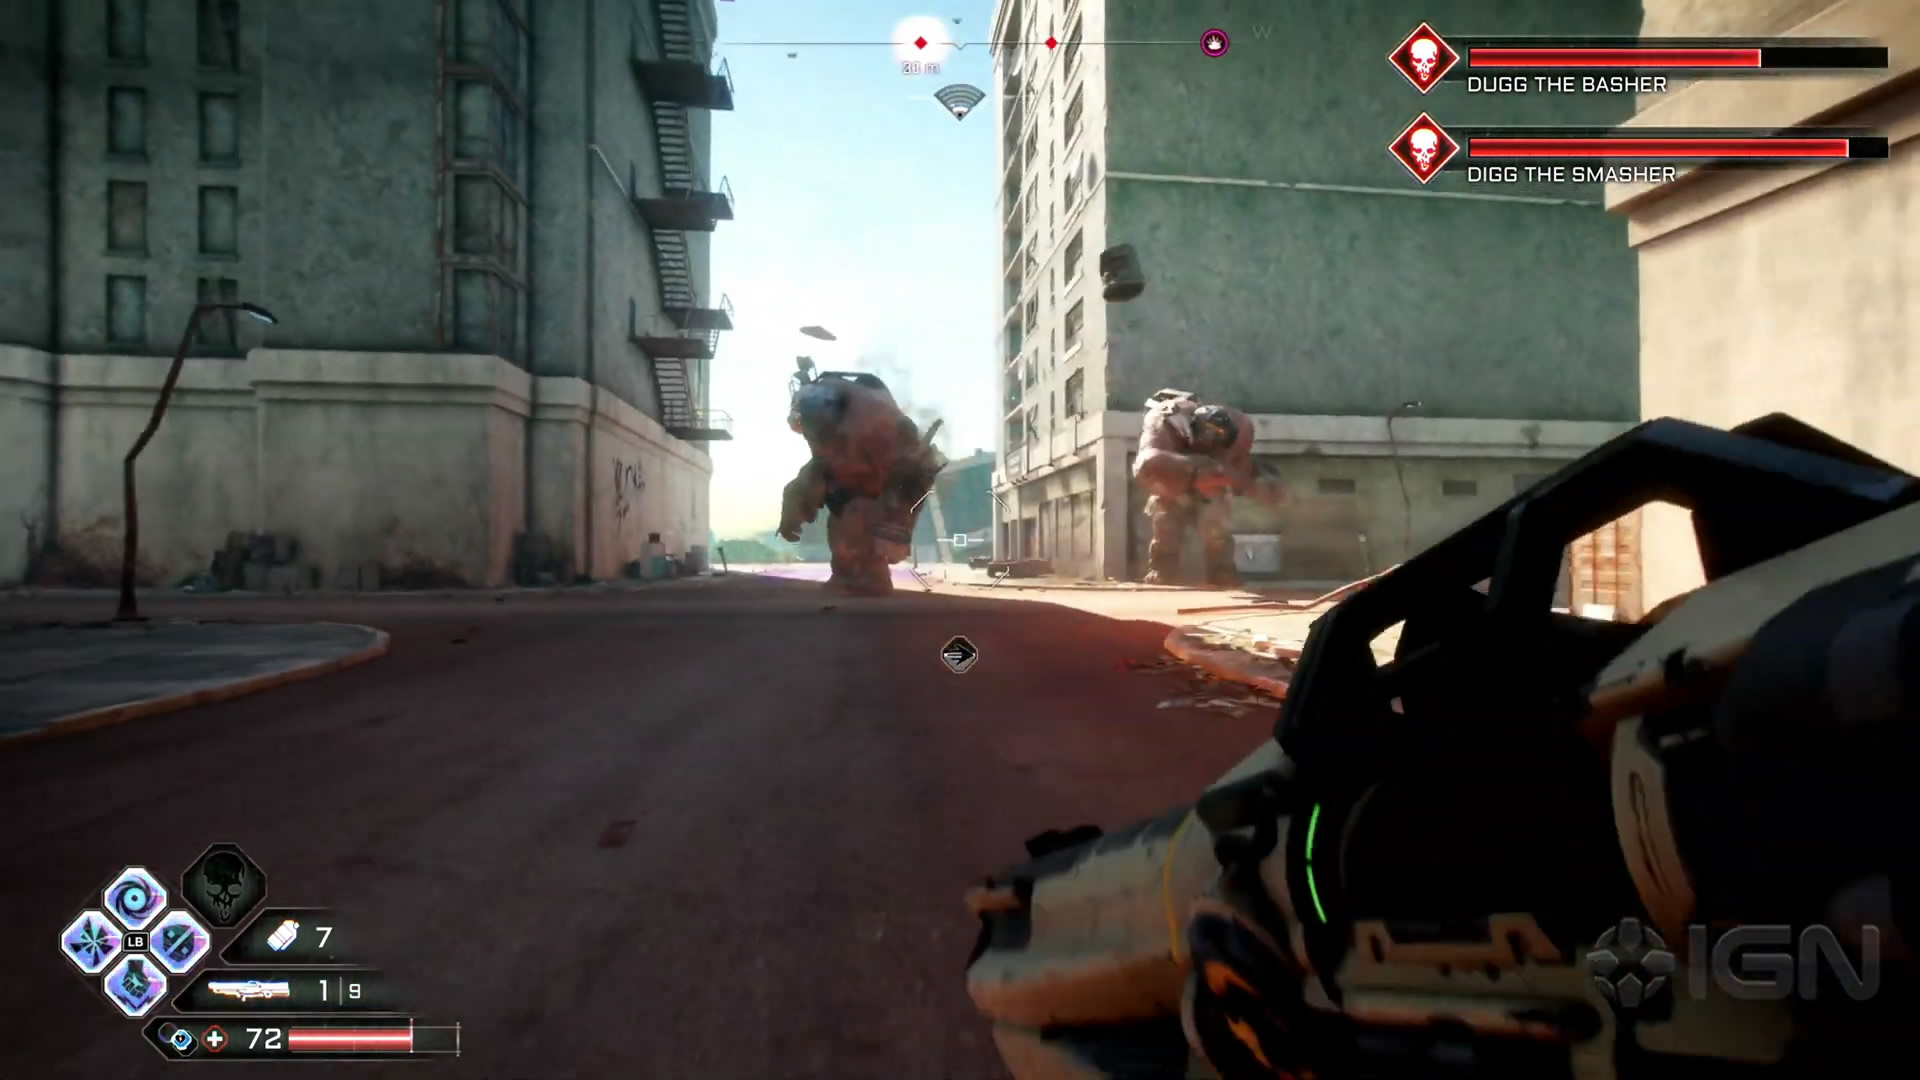 《狂怒煉獄2》最新演示展示載具戰鬥 槍械效果太酷炫了